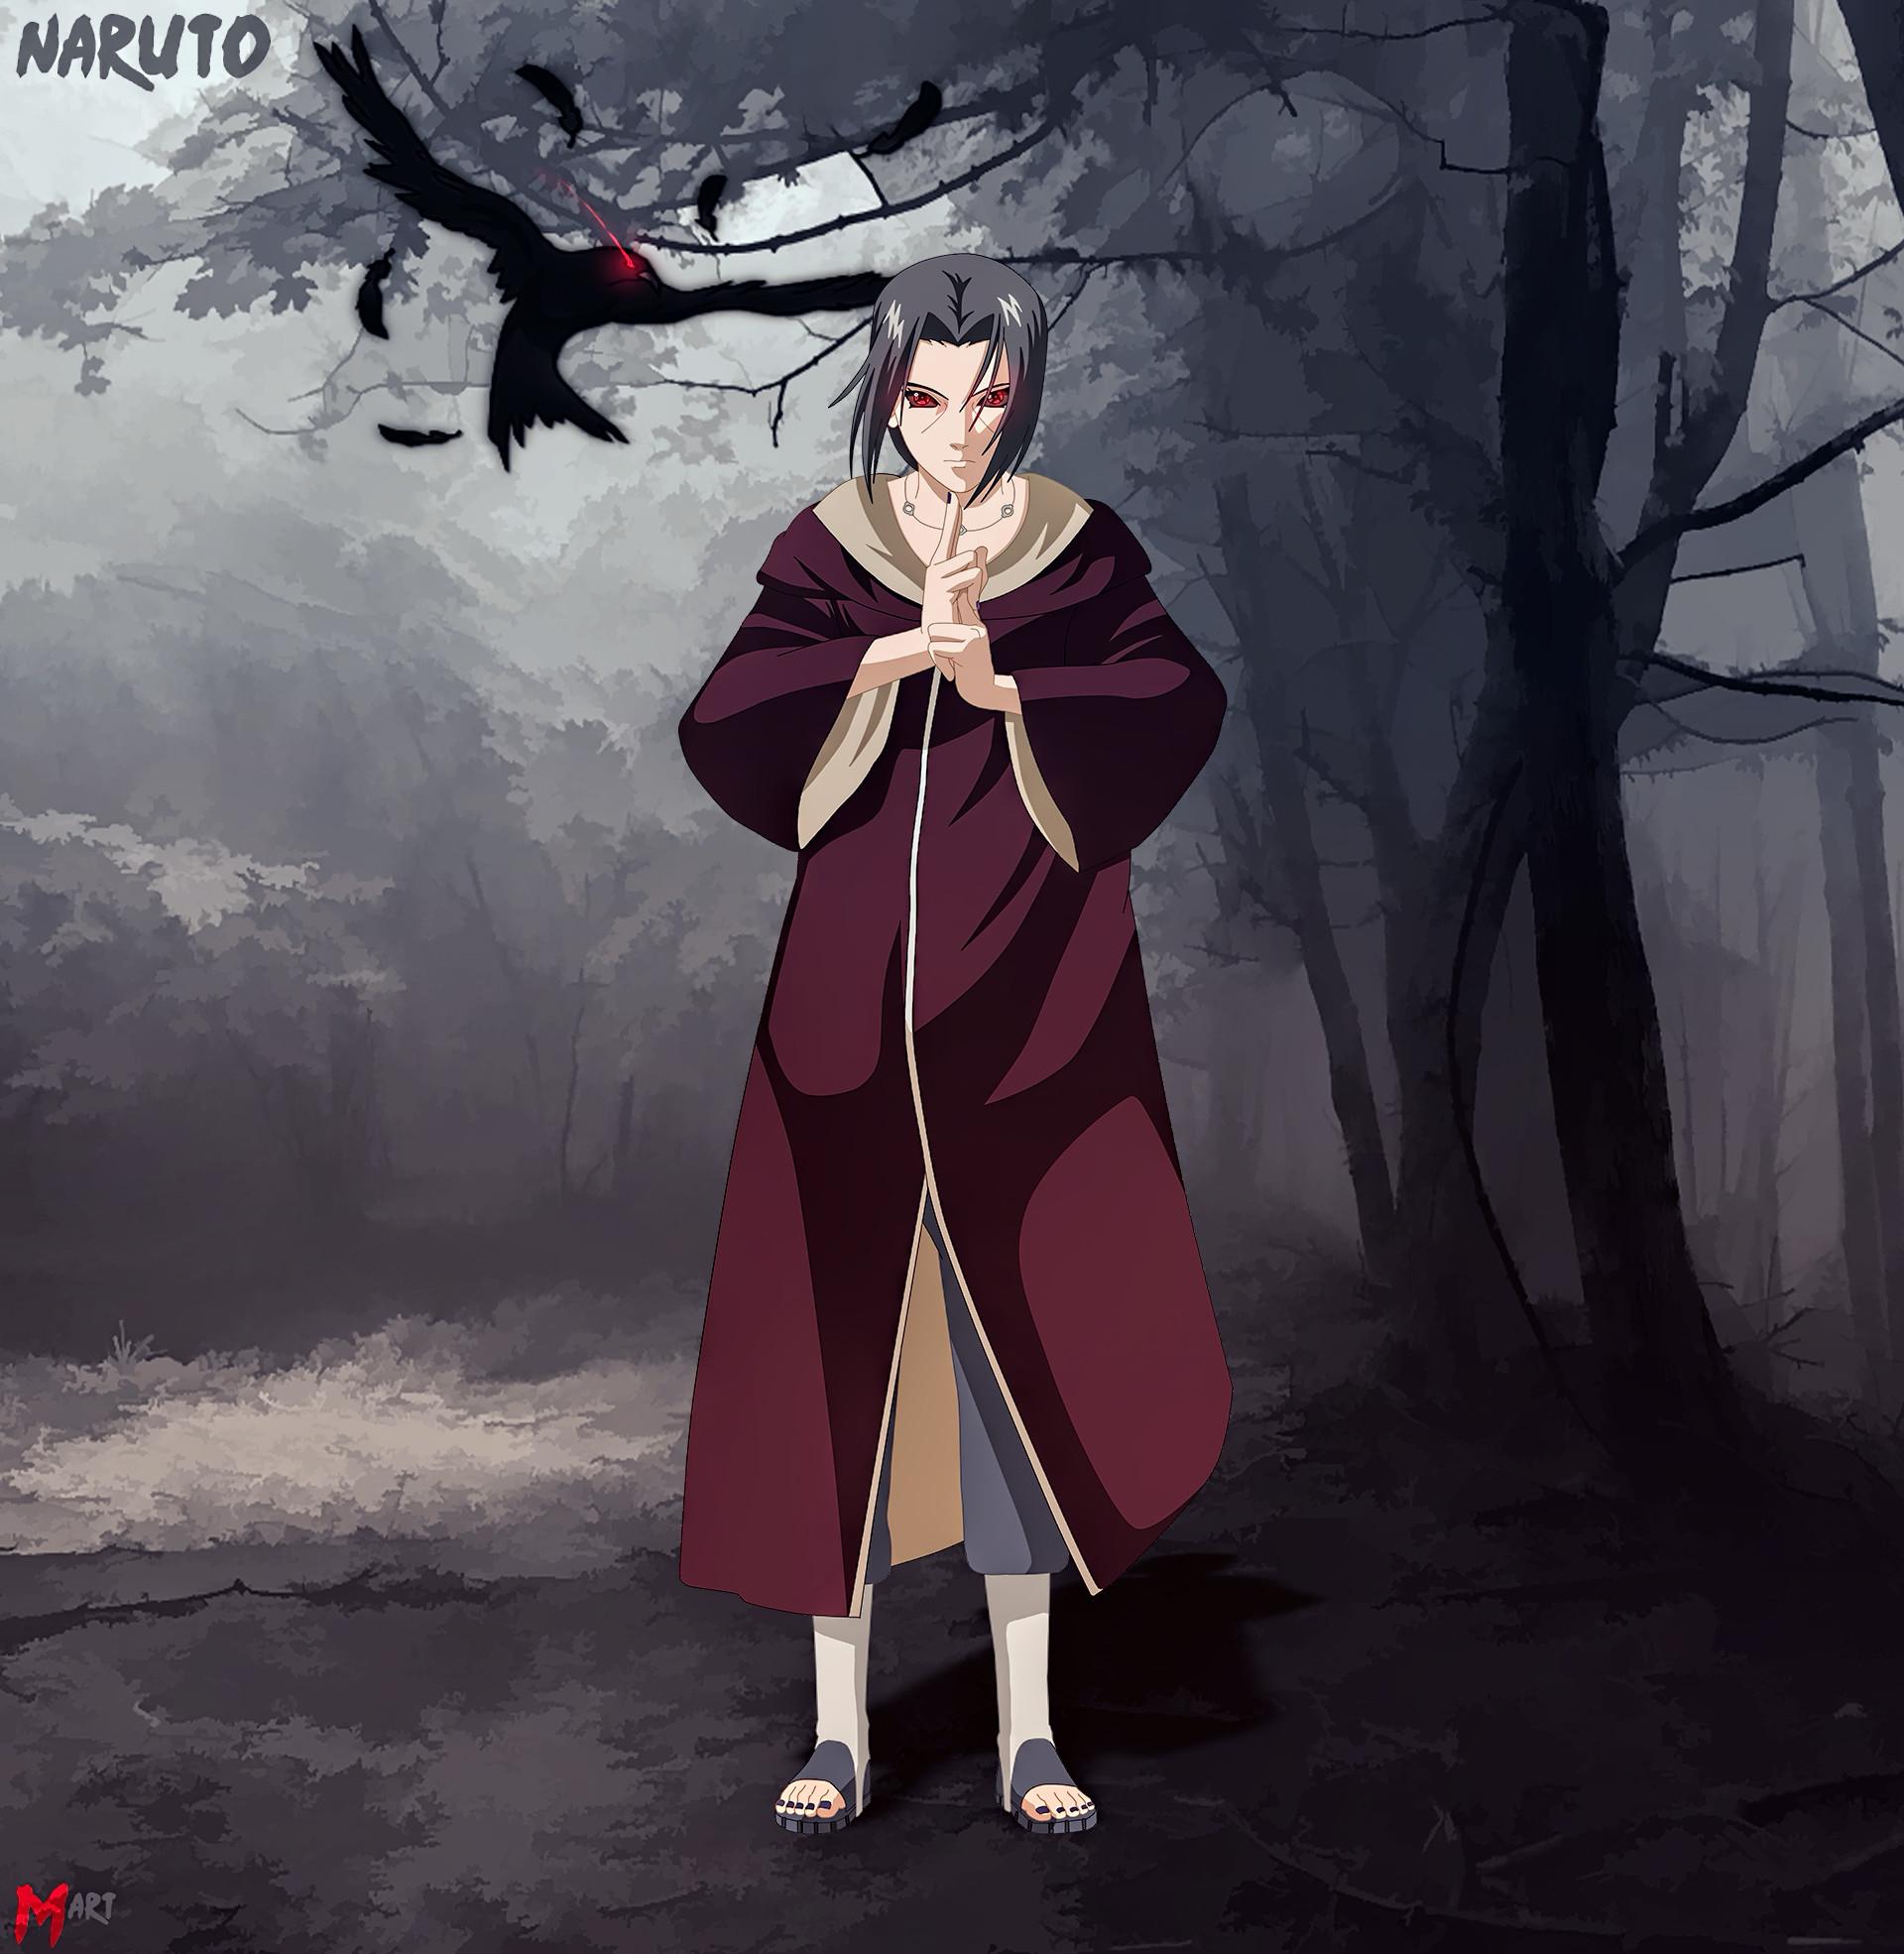 Edo Itachi: Edo Itachi là một trong những nhân vật quan trọng trong series Naruto. Xem hình ảnh liên quan để tìm hiểu về cuộc sống của một ninja huyền thoại và cuộc phiêu lưu đầy thử thách của anh ta.